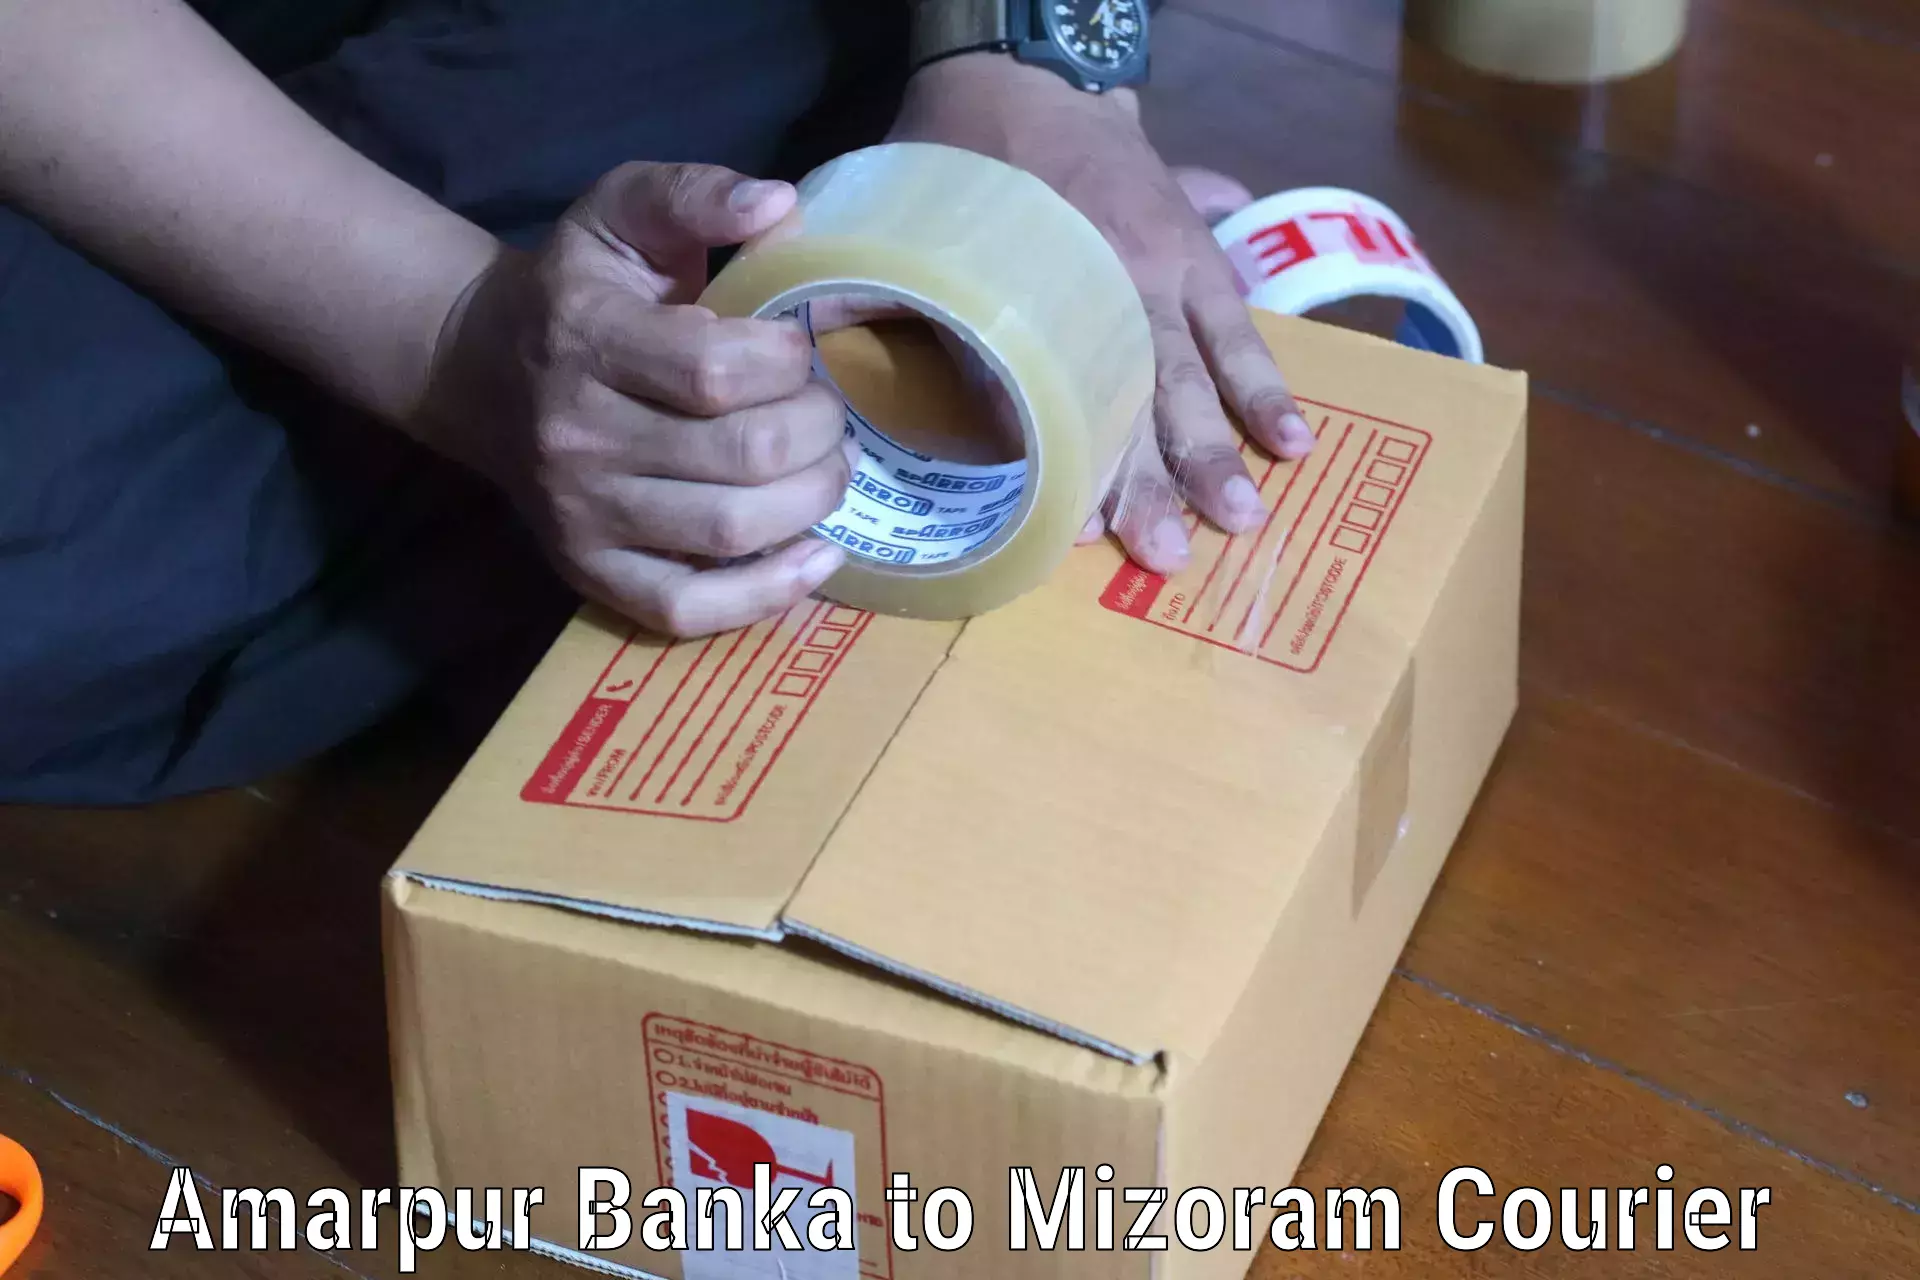 Efficient parcel service Amarpur Banka to Hnahthial